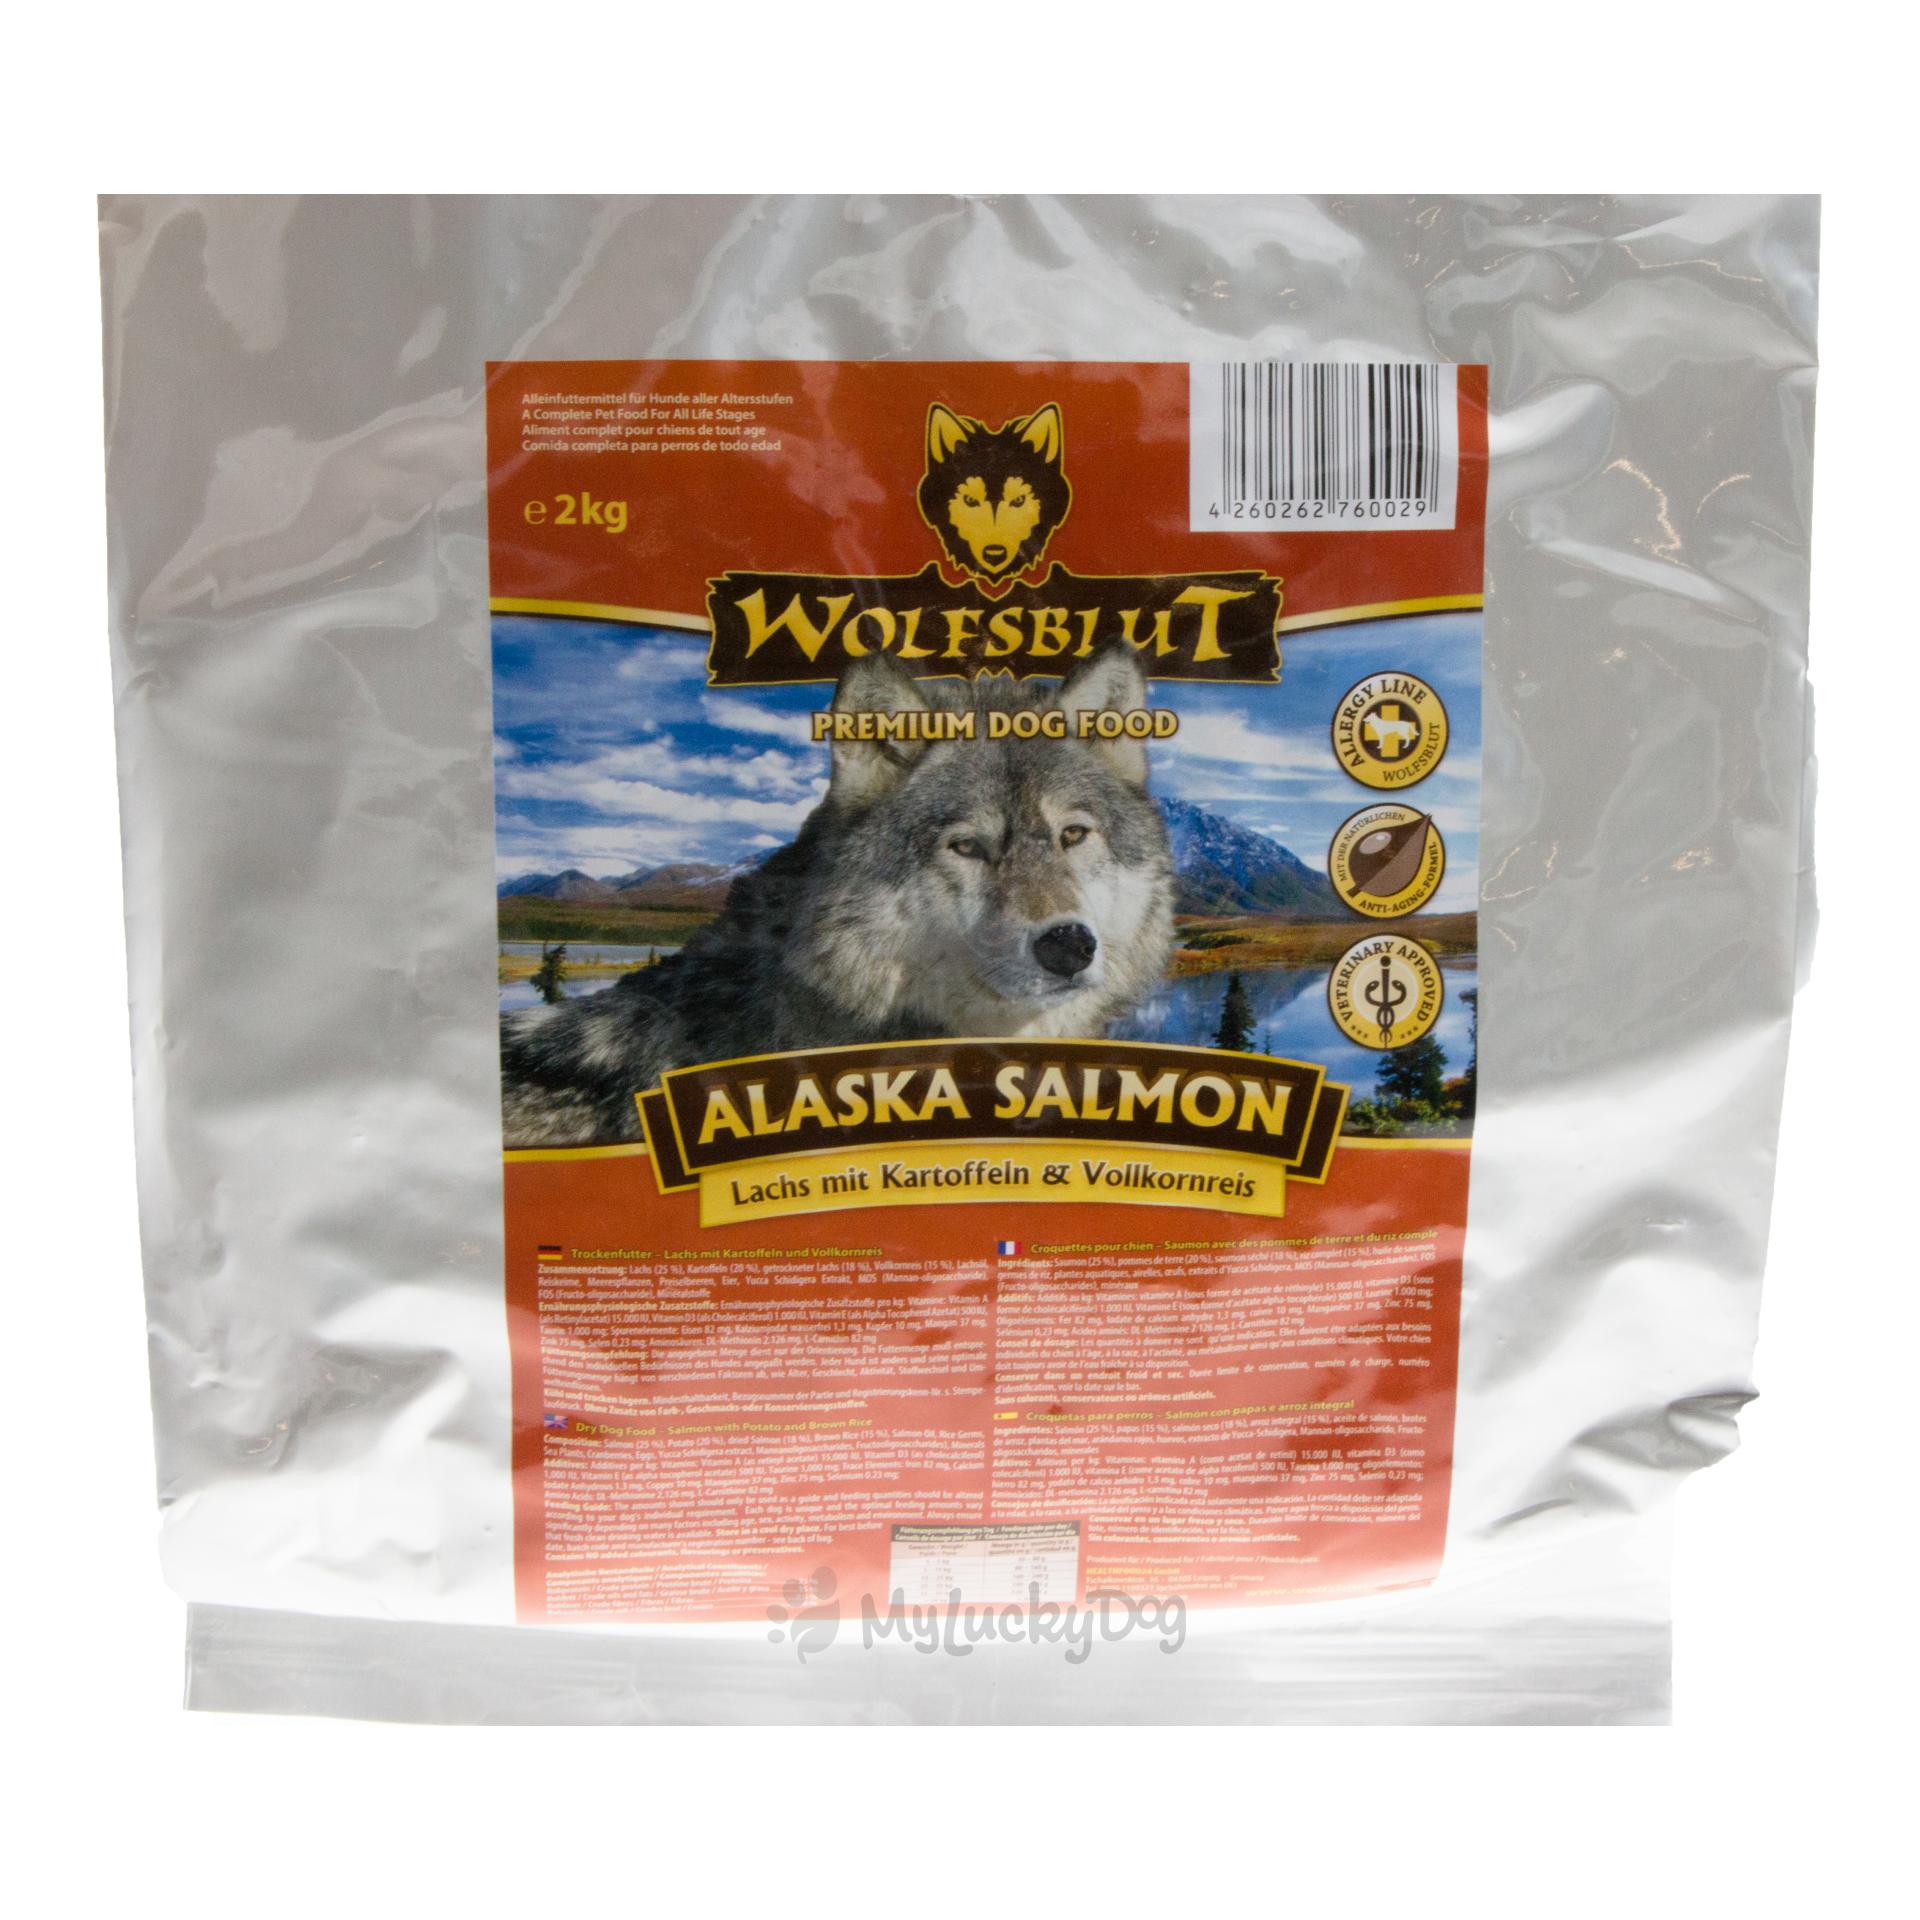 Image of Wolfsblut Trockenfutter für Hunde Alaska Salmon ADULT Lachs & Kartoffel bei Hauptner.ch